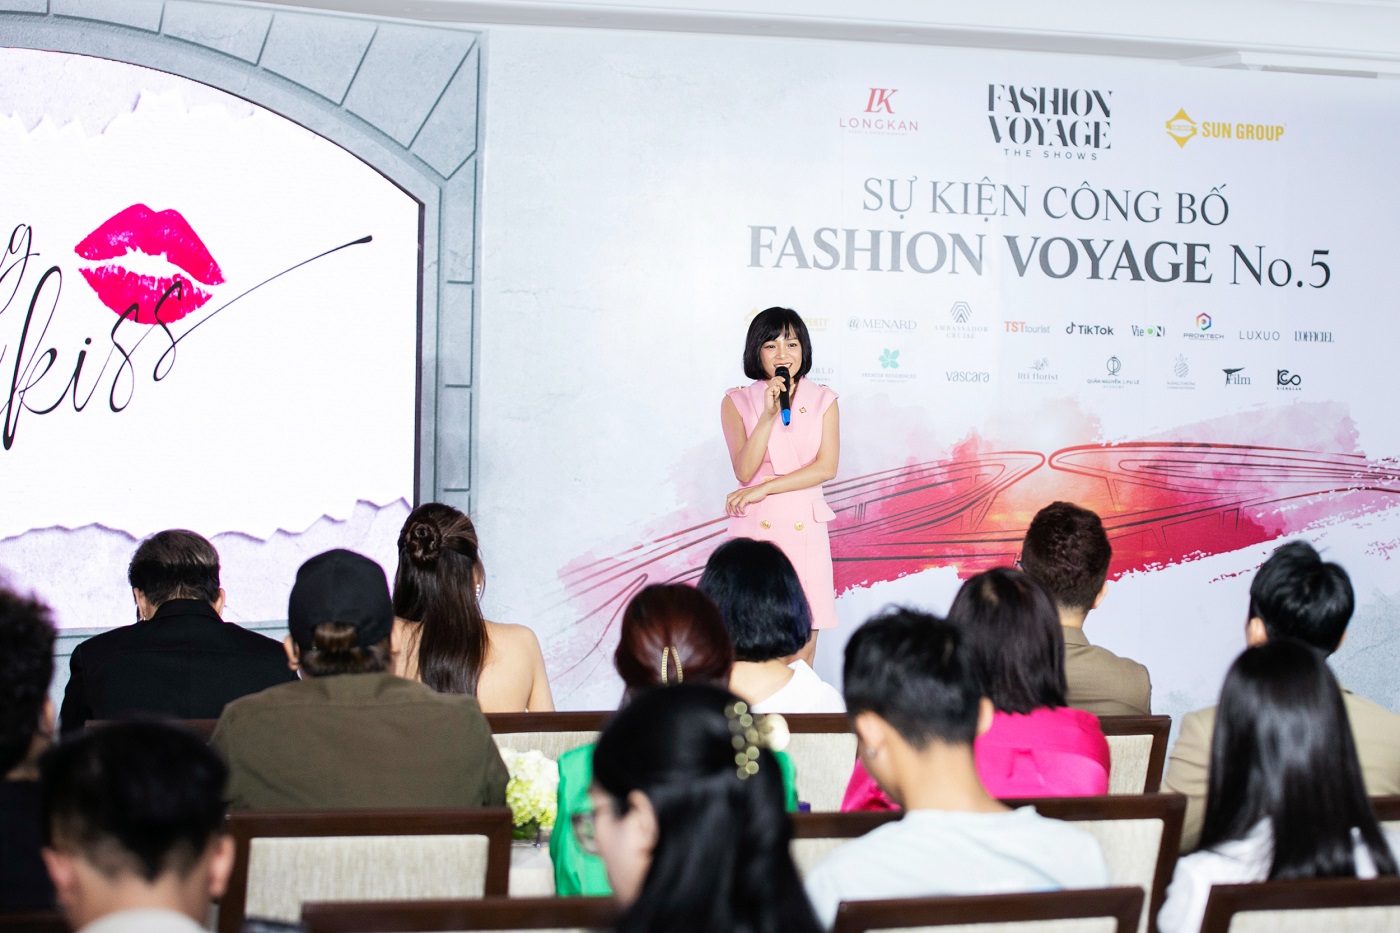 Đại diện Sun Group chia sẻ tại buổi họp báo công bố Fashion Voyage số 5